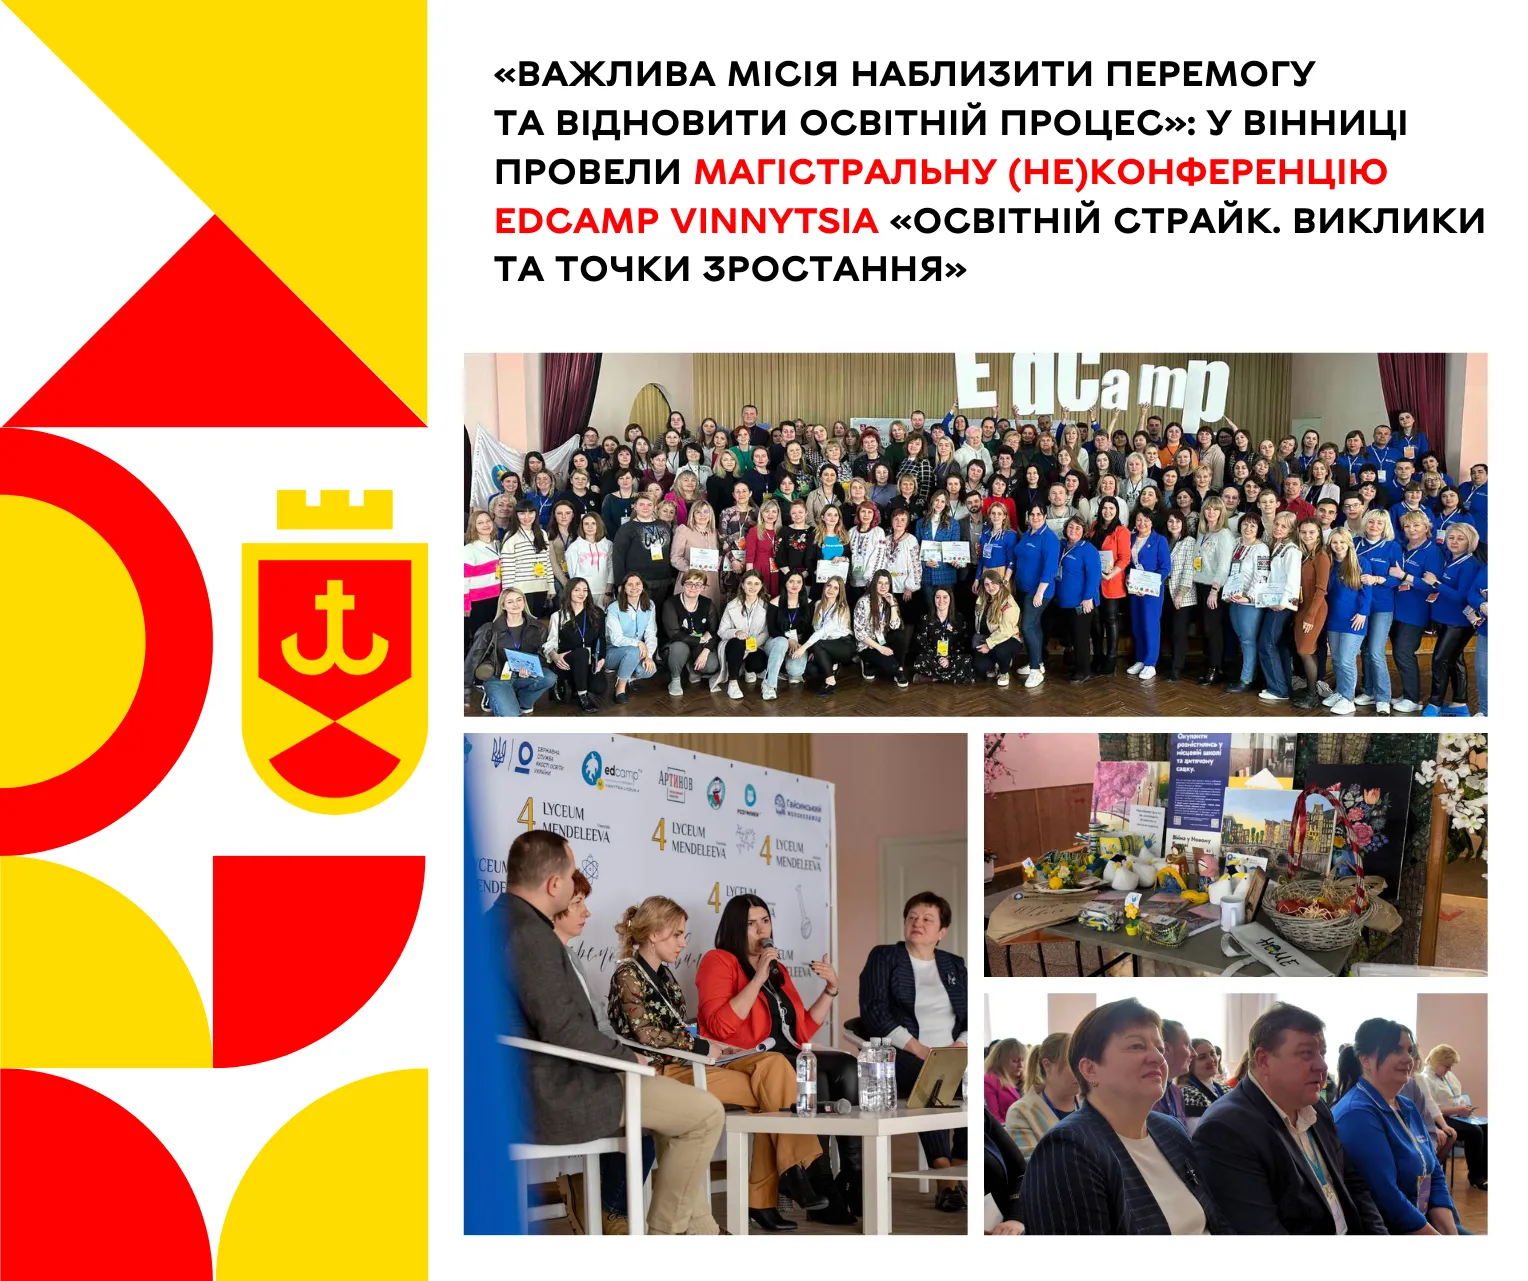 У Вінниці відбулася магістральна(не)конференція EdCamp Vinnytsia «Освітній страйк. Виклики та точки зростання»